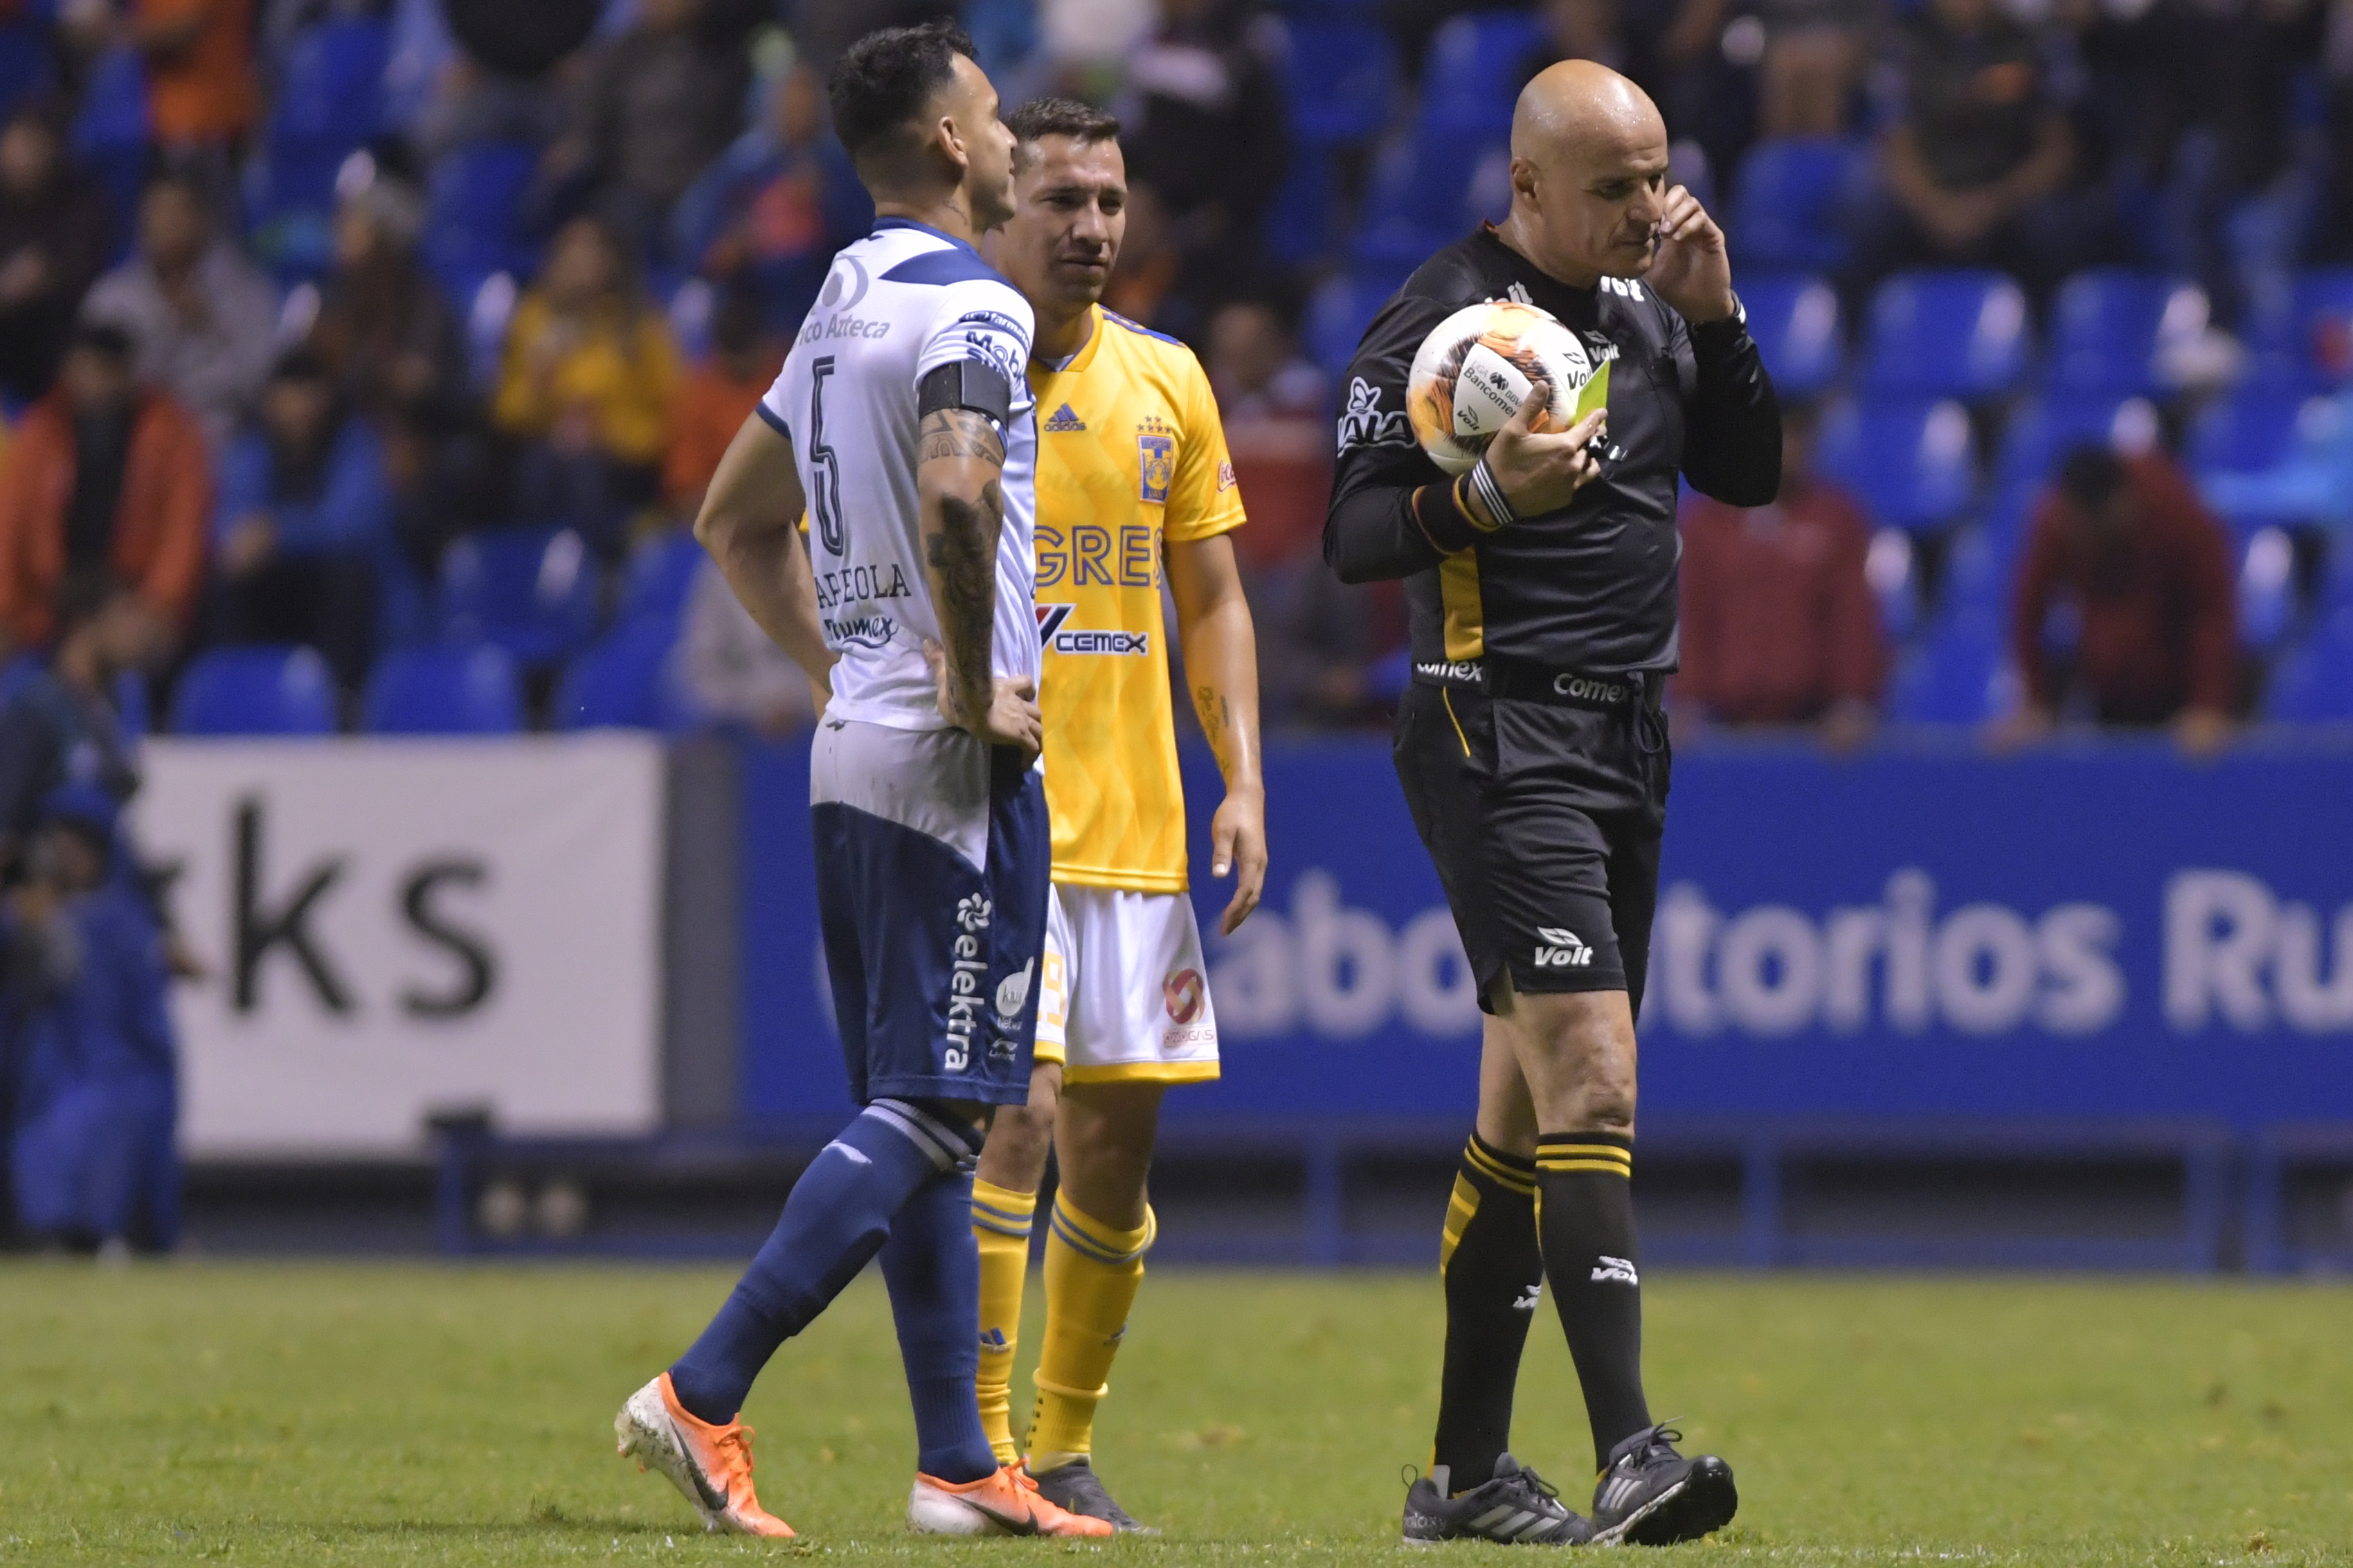 El Clausura 2019 vive su jornada con más suspendidos